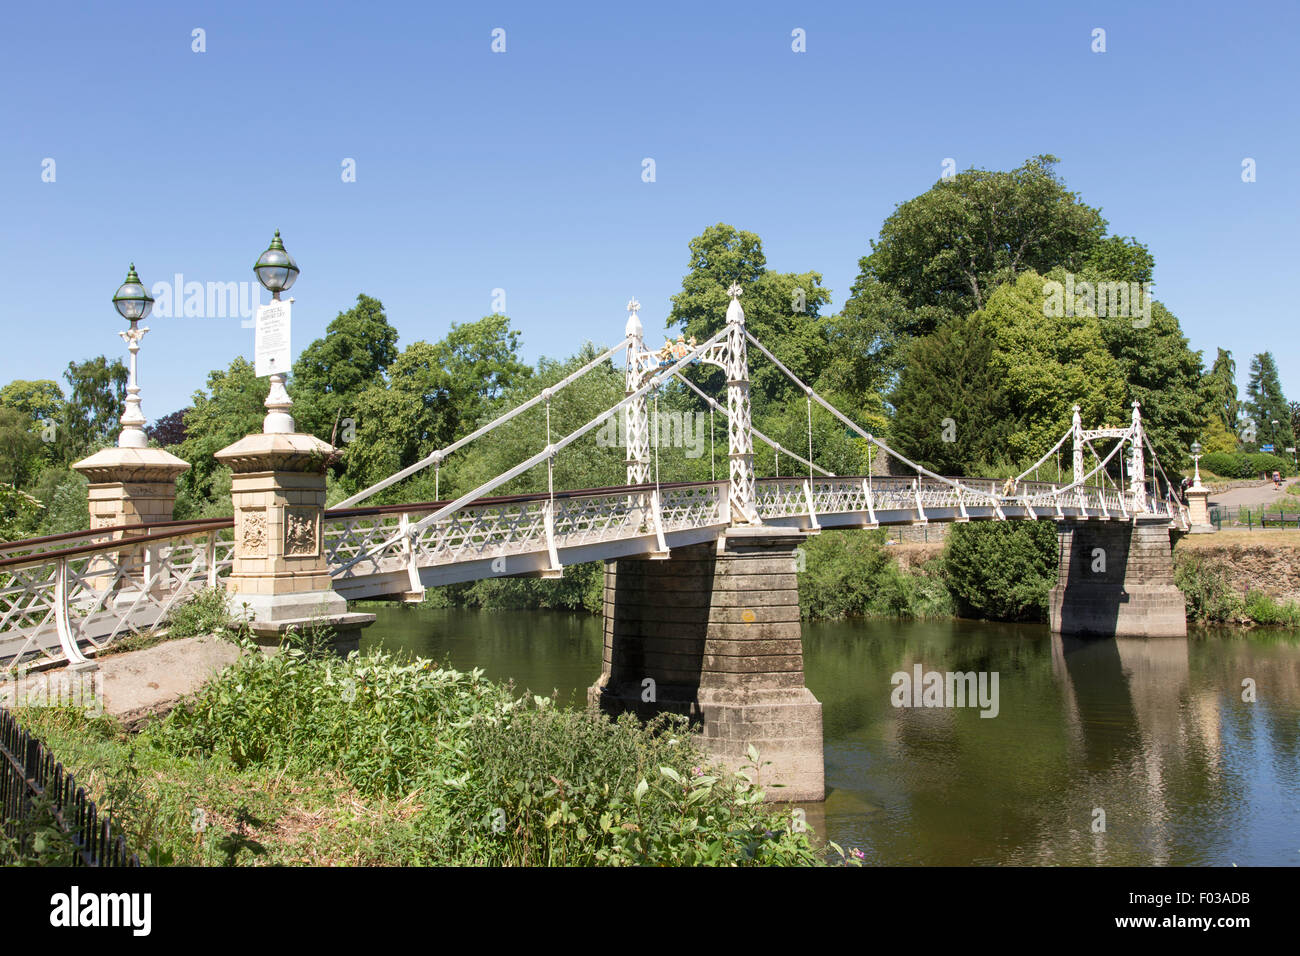 La victoria puente peatonal que cruza el río Wye en Hereford, Herefordshire, Inglaterra, Reino Unido. Foto de stock